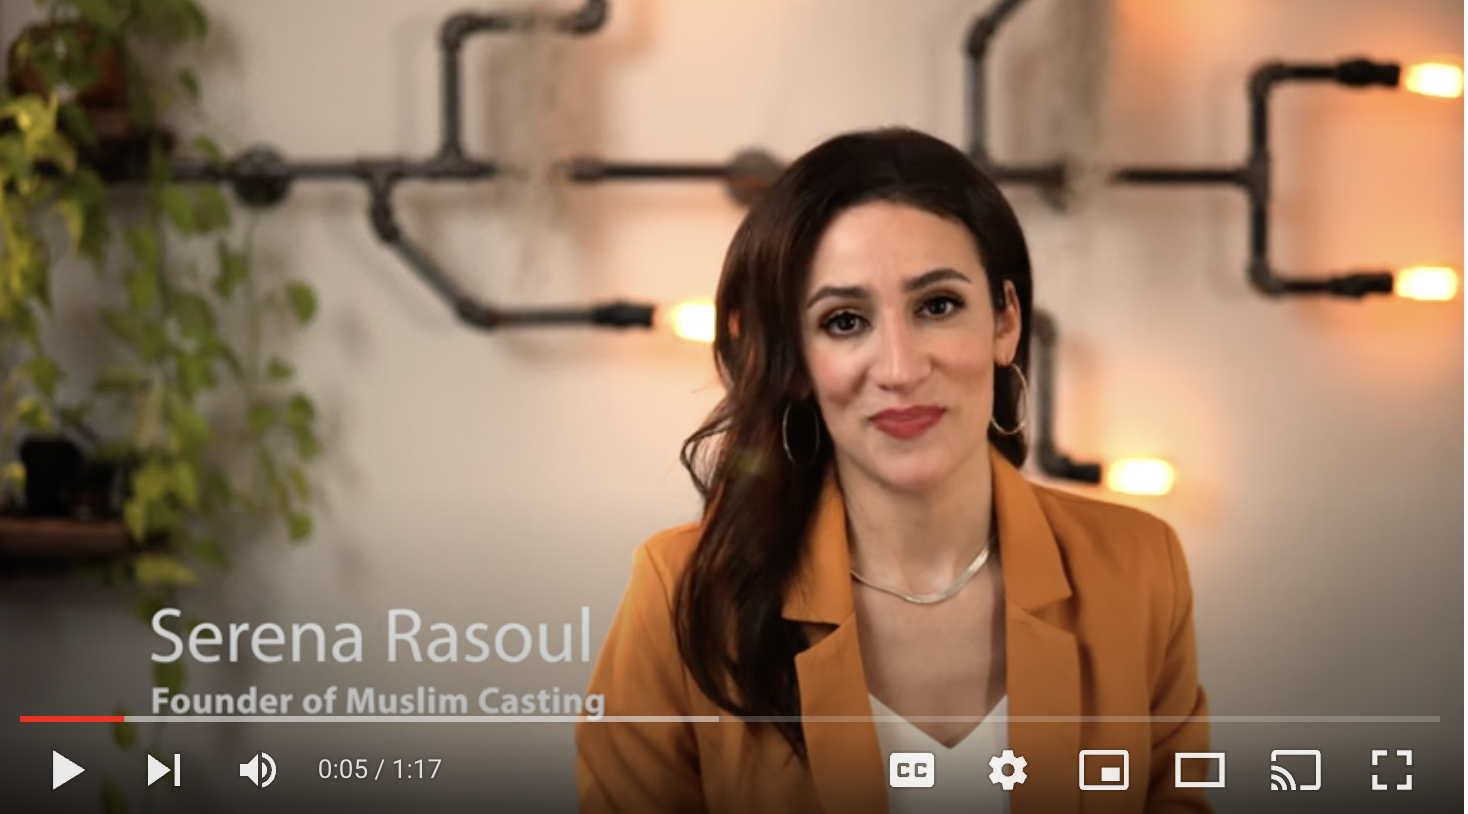 Serena Rasoul speaking in Muslim Casting video